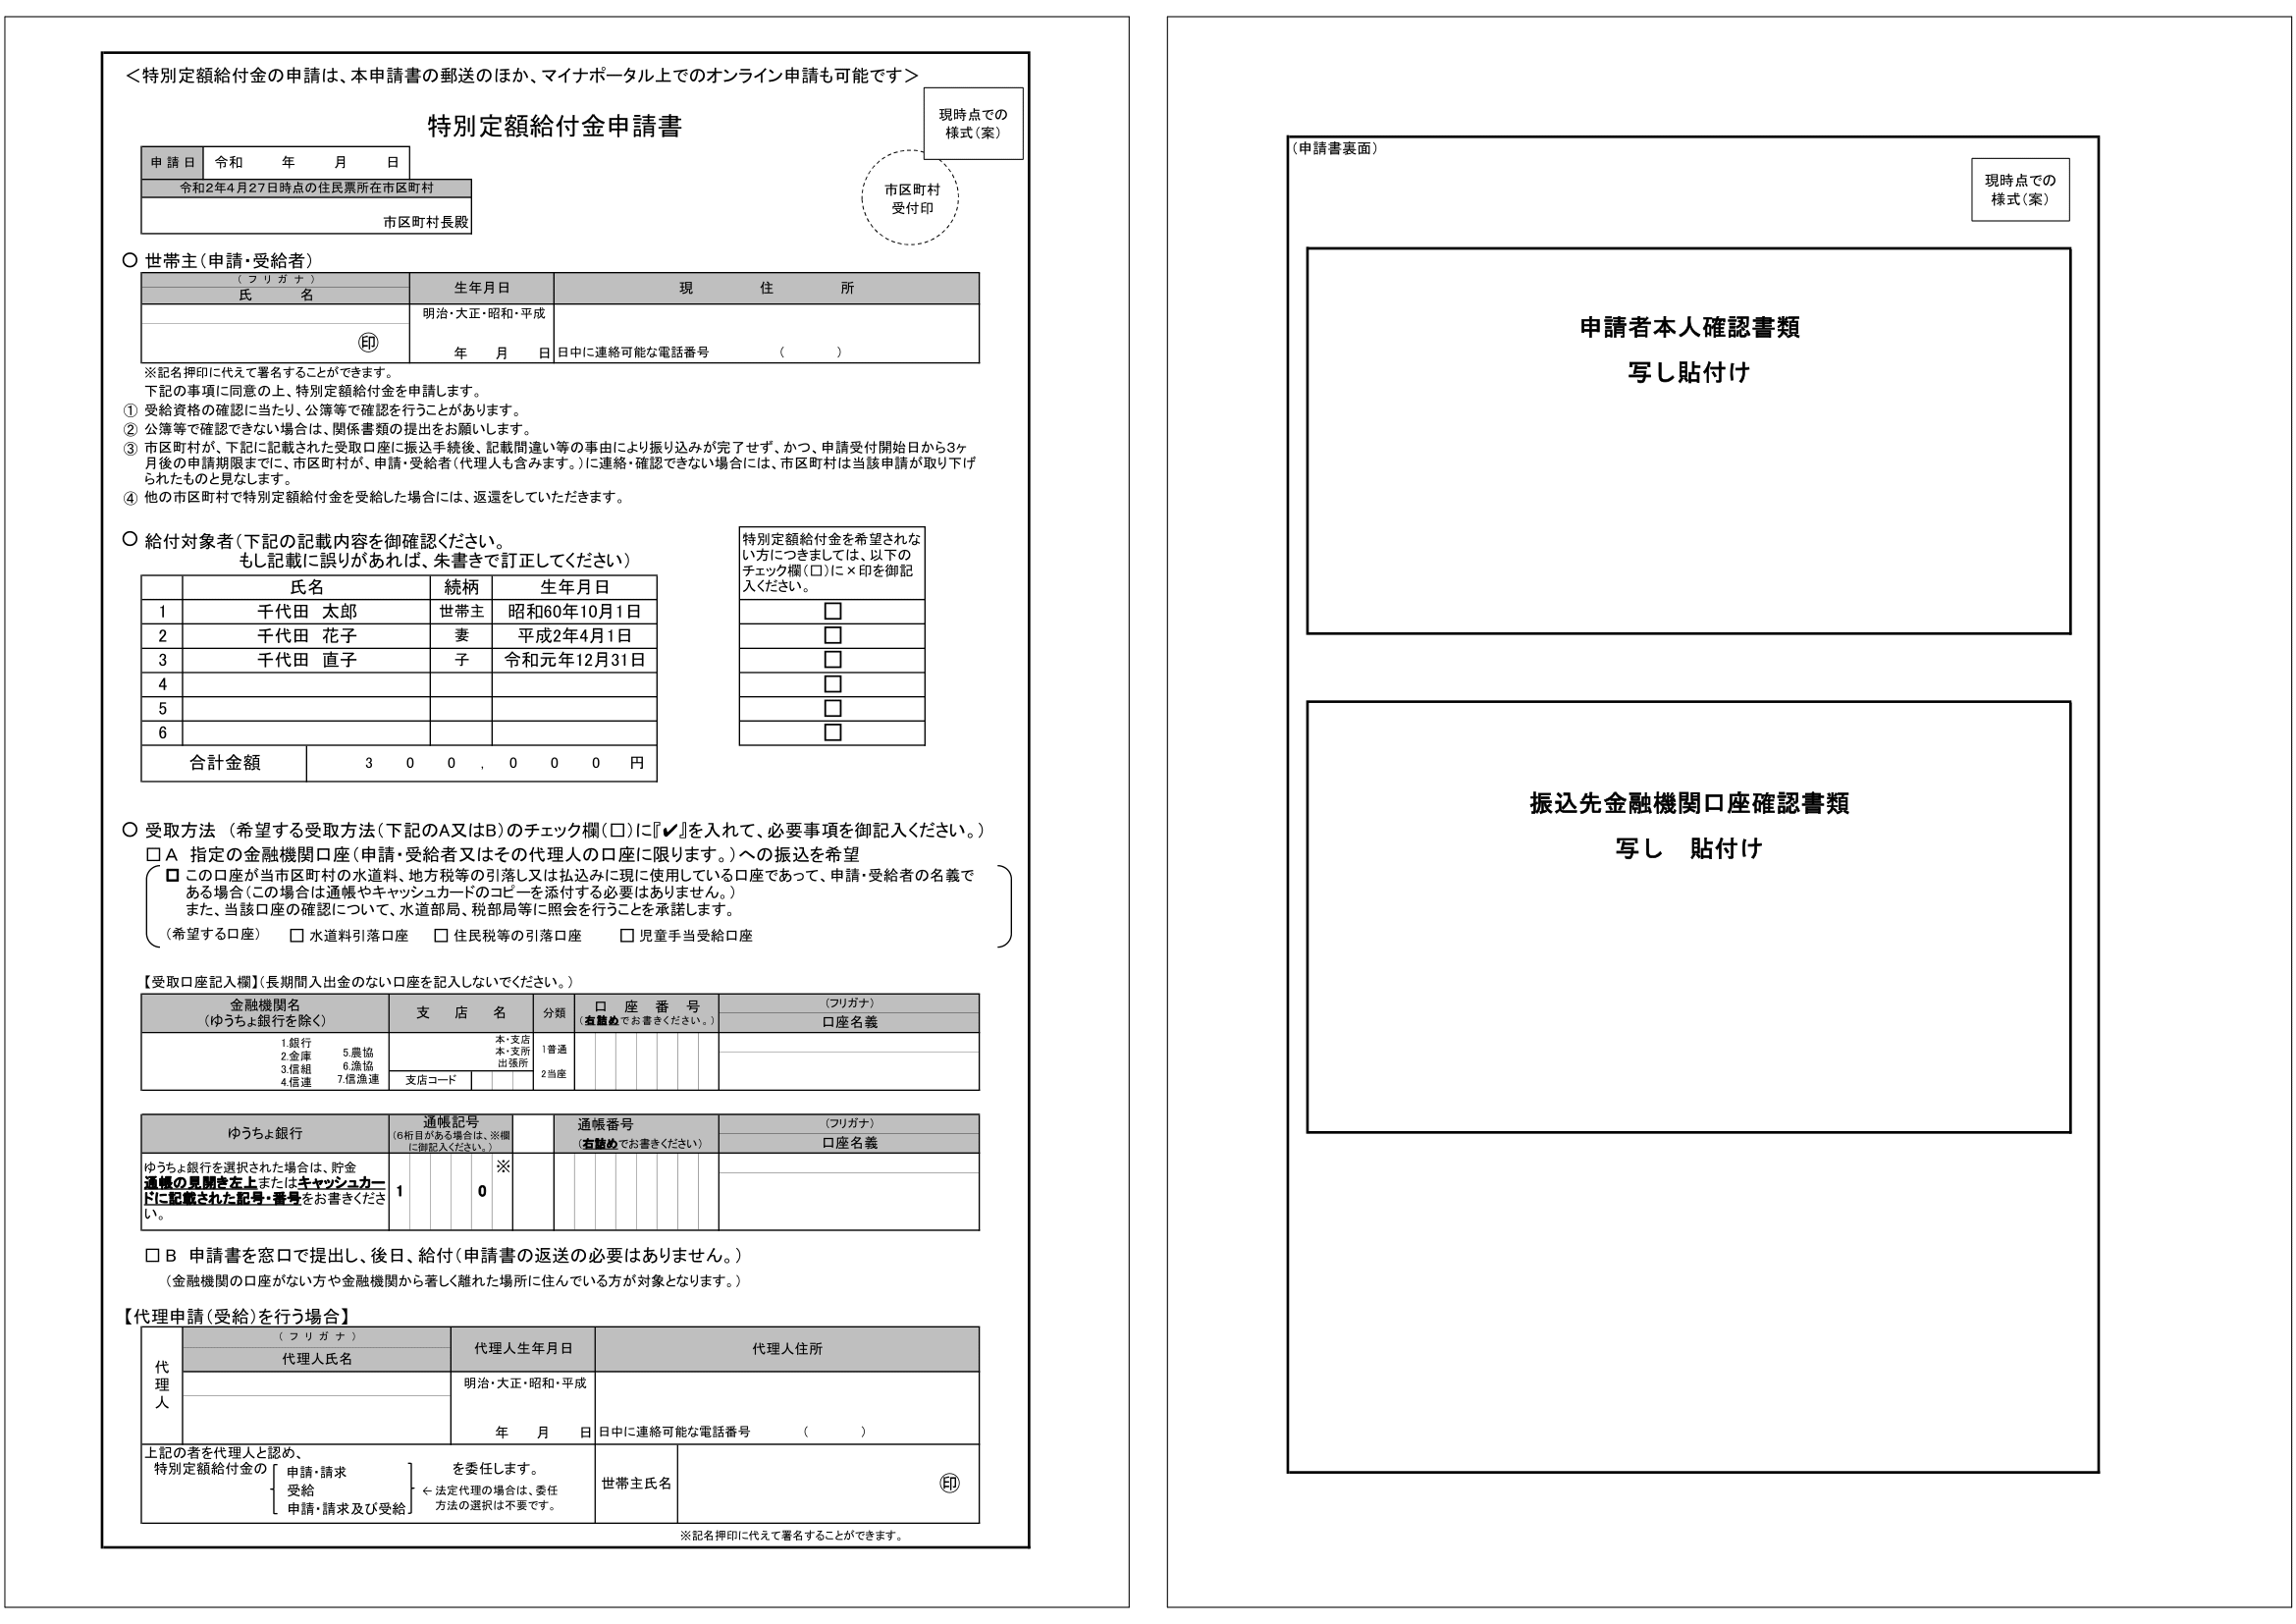 Проект формы заявки на перевод «специальной фиксированной суммы» в размере 100 000 йен